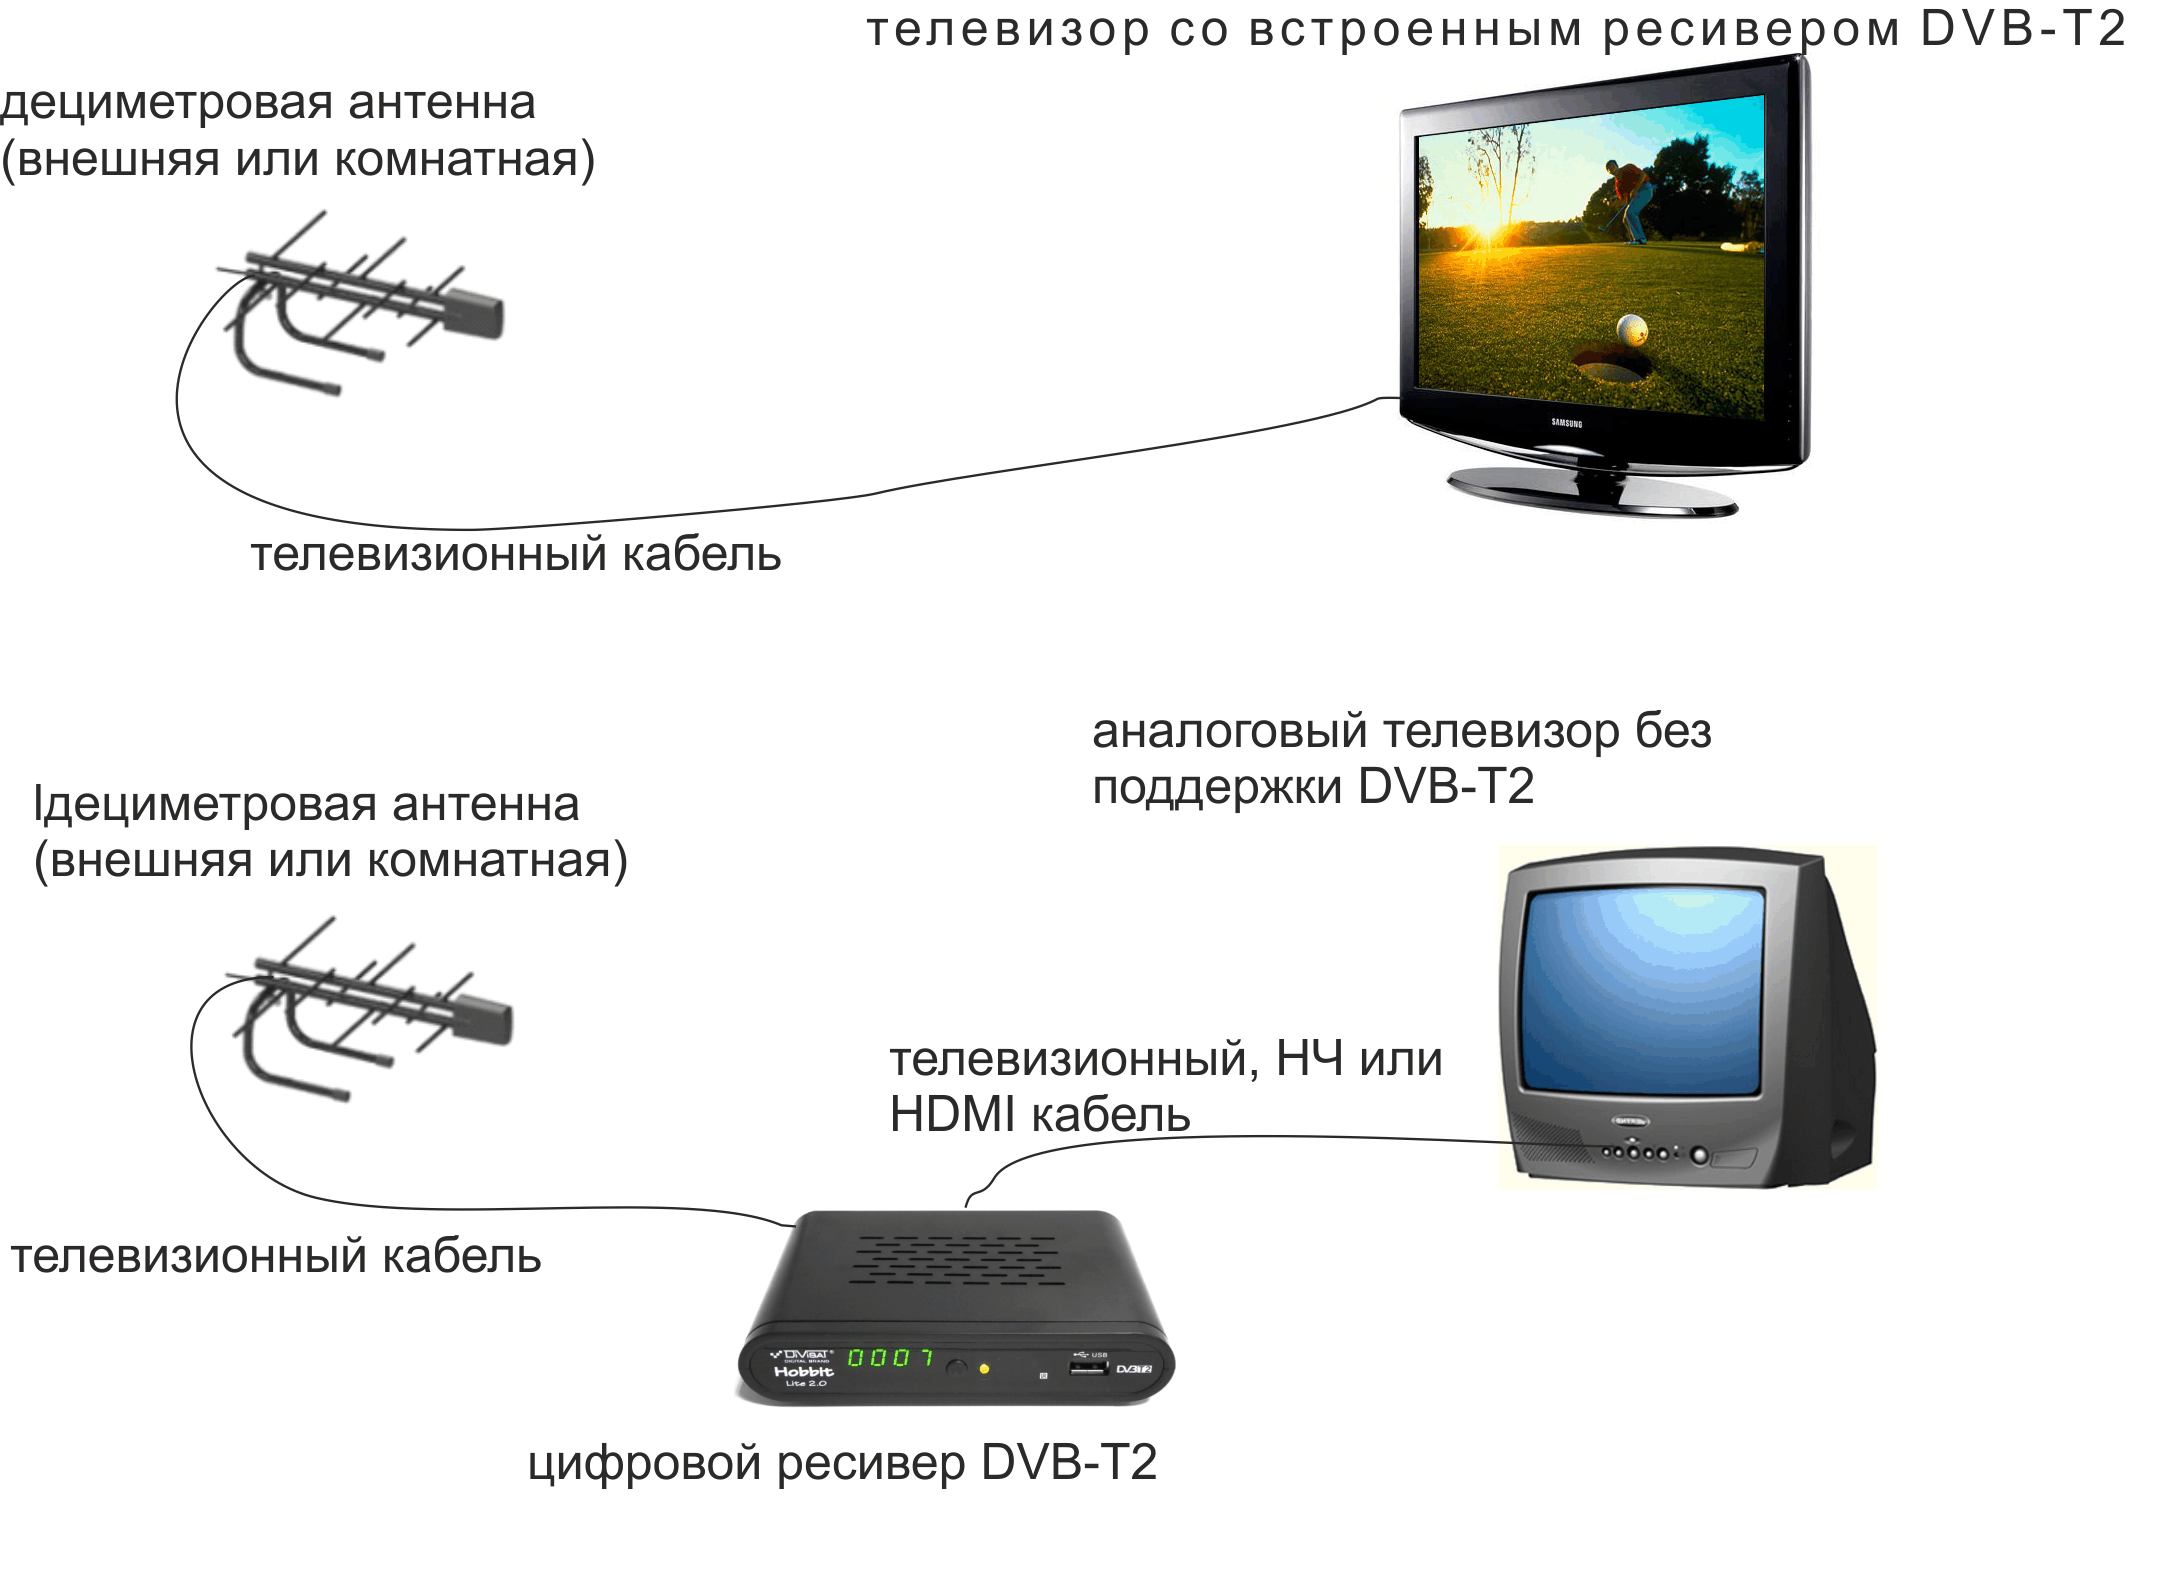 Dvb-t и t2: что это такое в телевизоре, описание цифровых стандартов